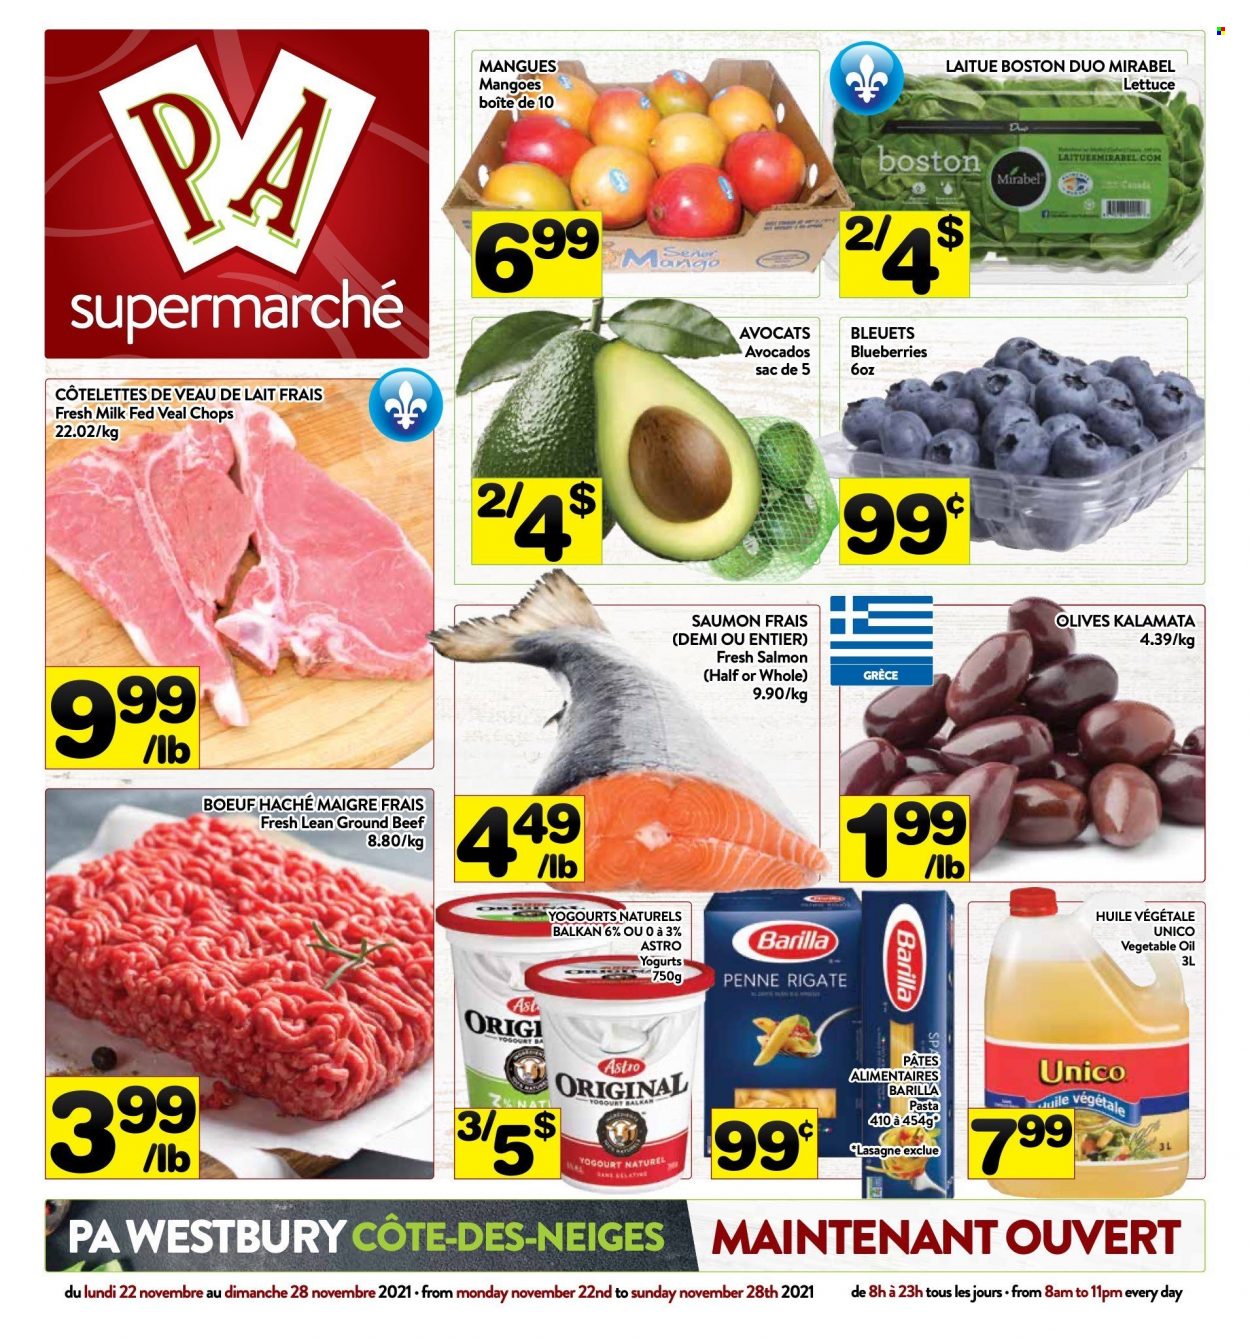 thumbnail - Circulaire PA Supermarché - 22 Novembre 2021 - 28 Novembre 2021 - Produits soldés - viande de veau, saumon, lasagnes, pâtes, olives, huile. Page 1.